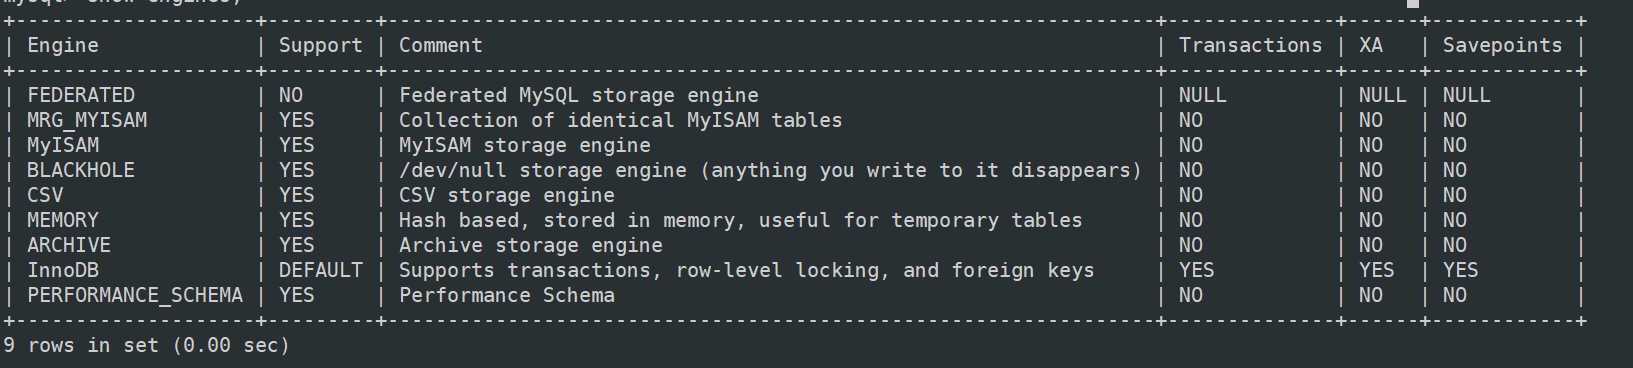 浅谈一下MyISAM和InnoDB存储引擎的区别